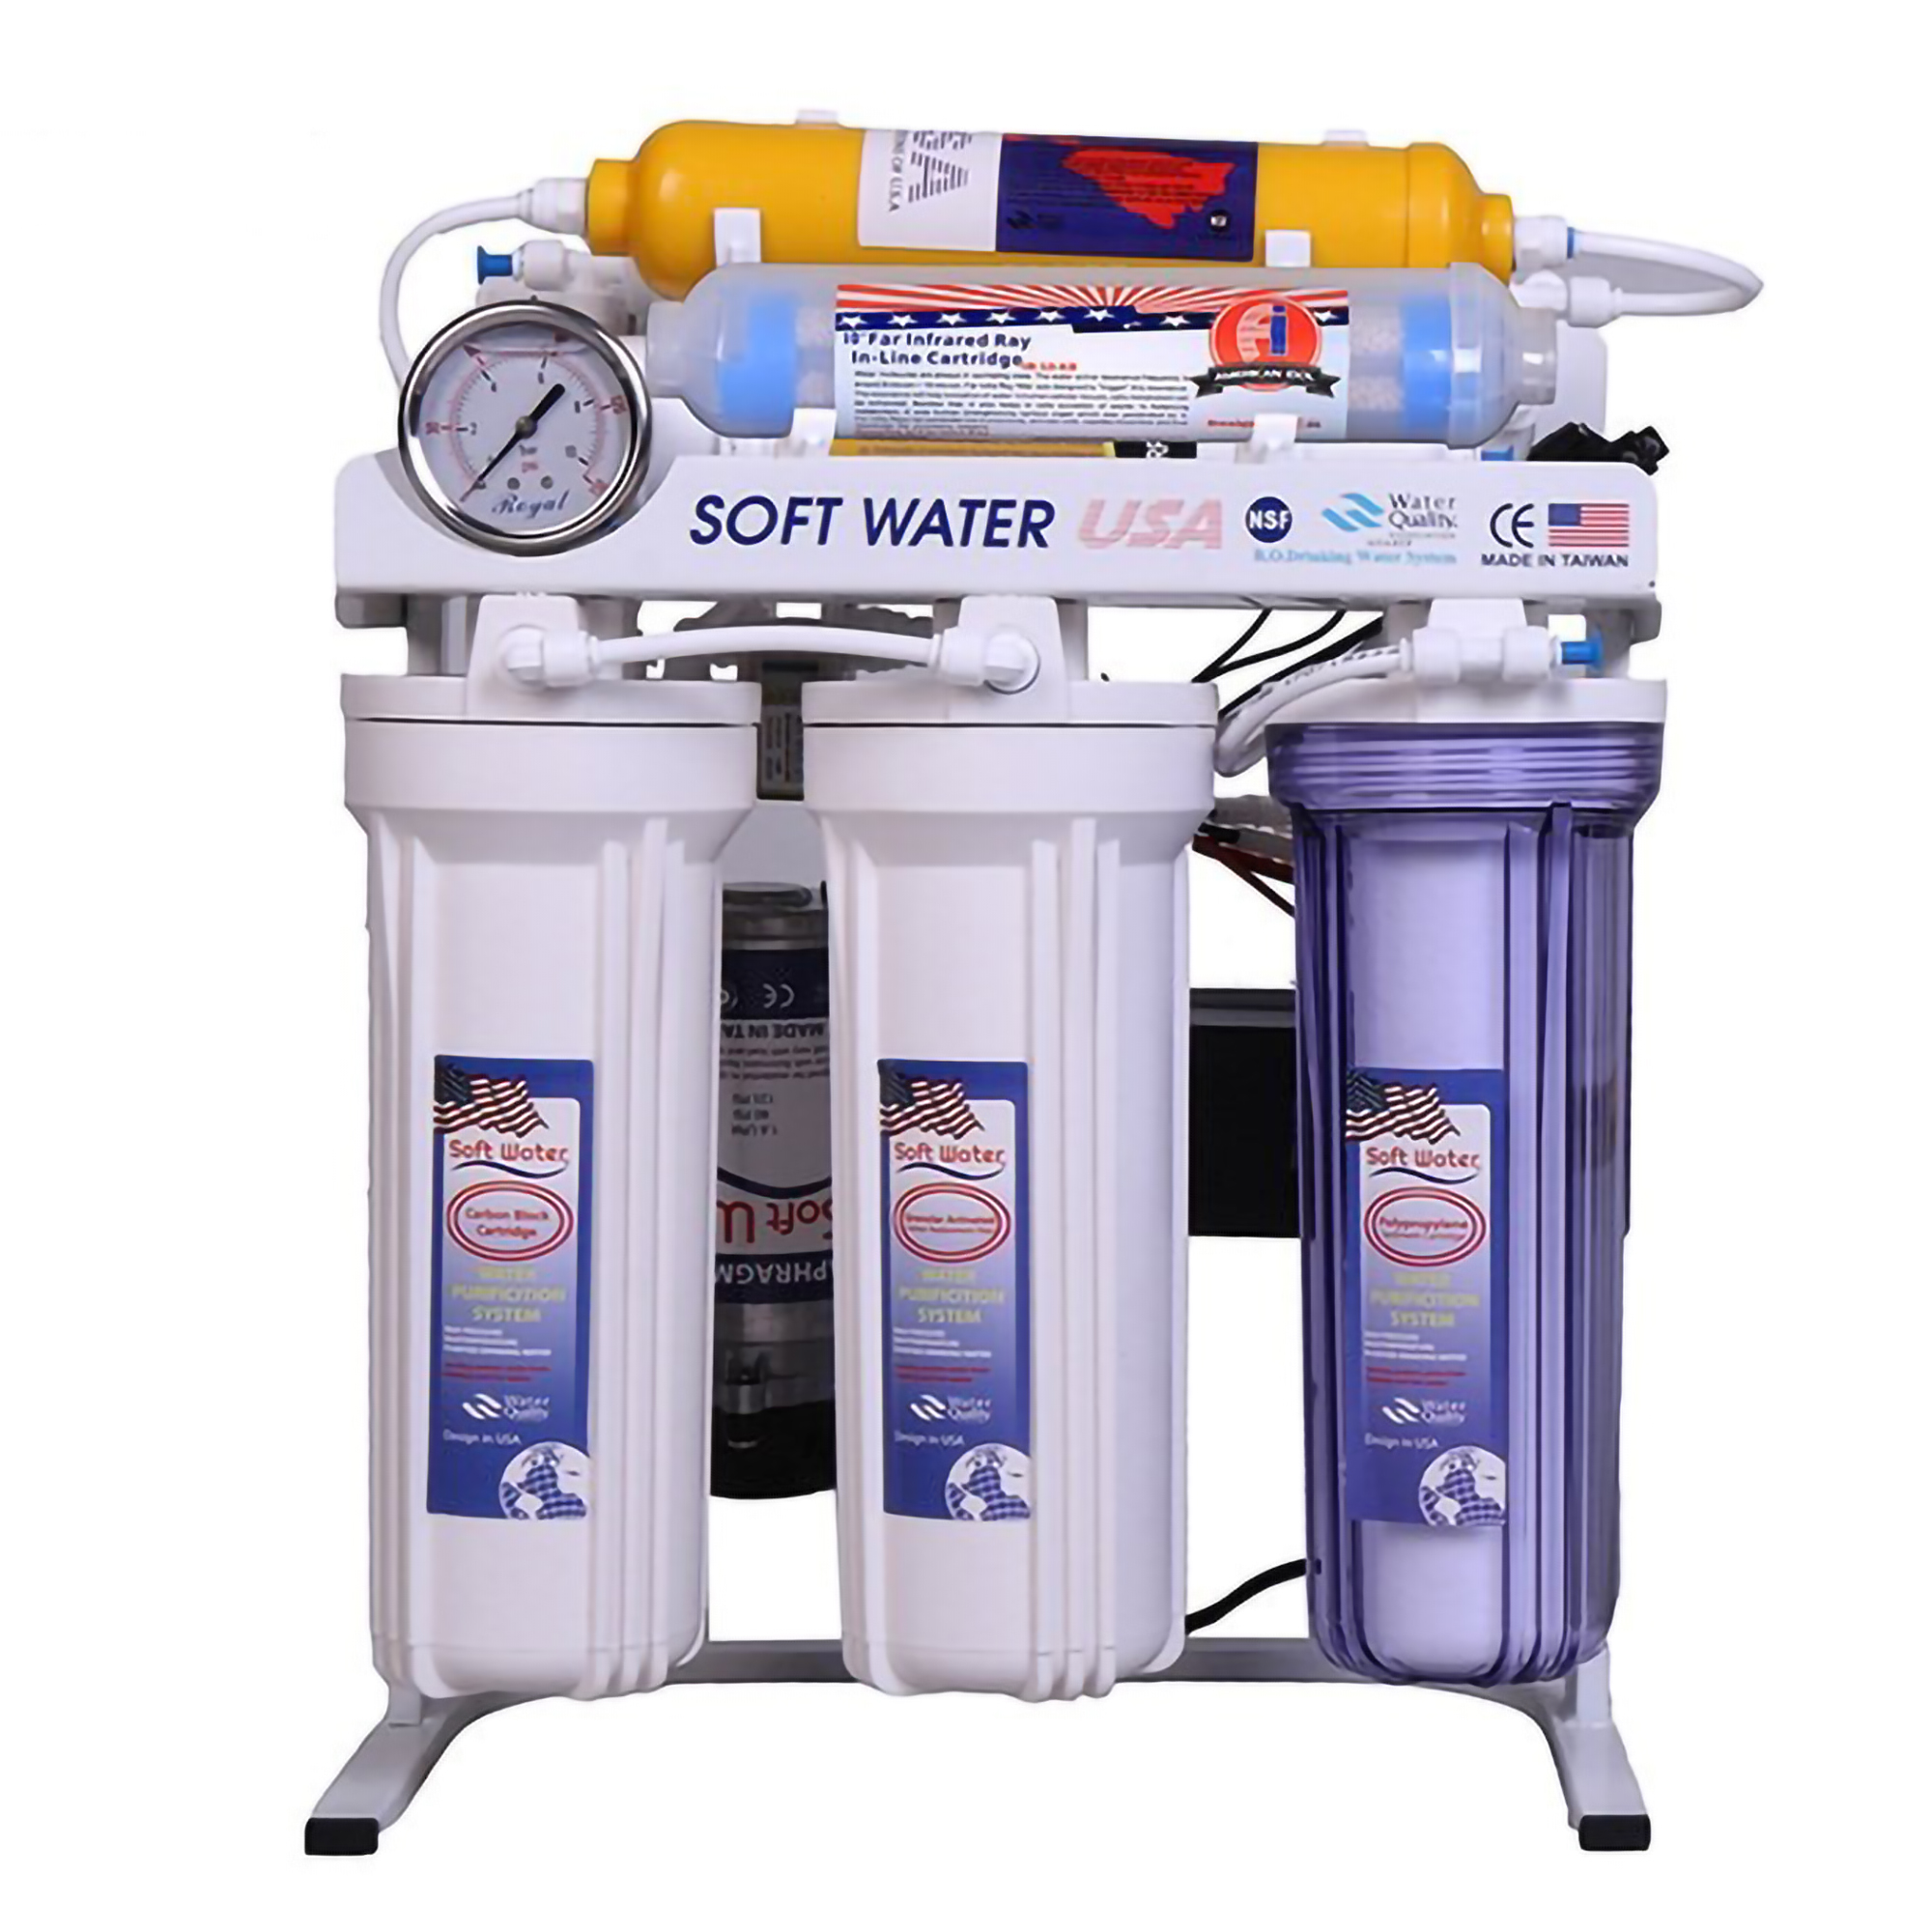 دستگاه تصفیه کننده آب سافت واتر مدل SoftwaterRO-07